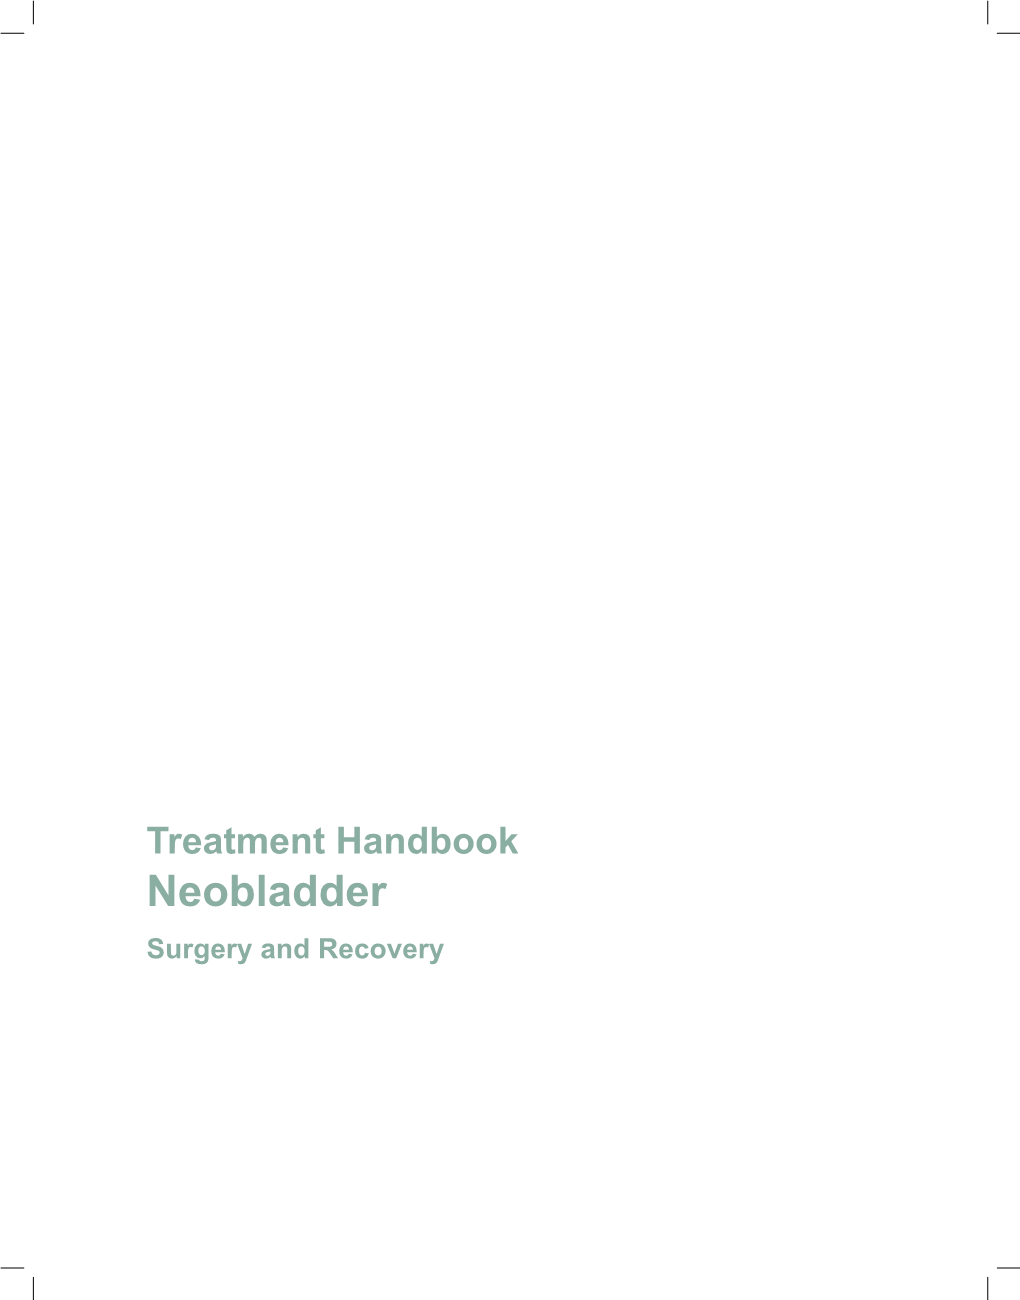 Treatment Handbook: Neobladder